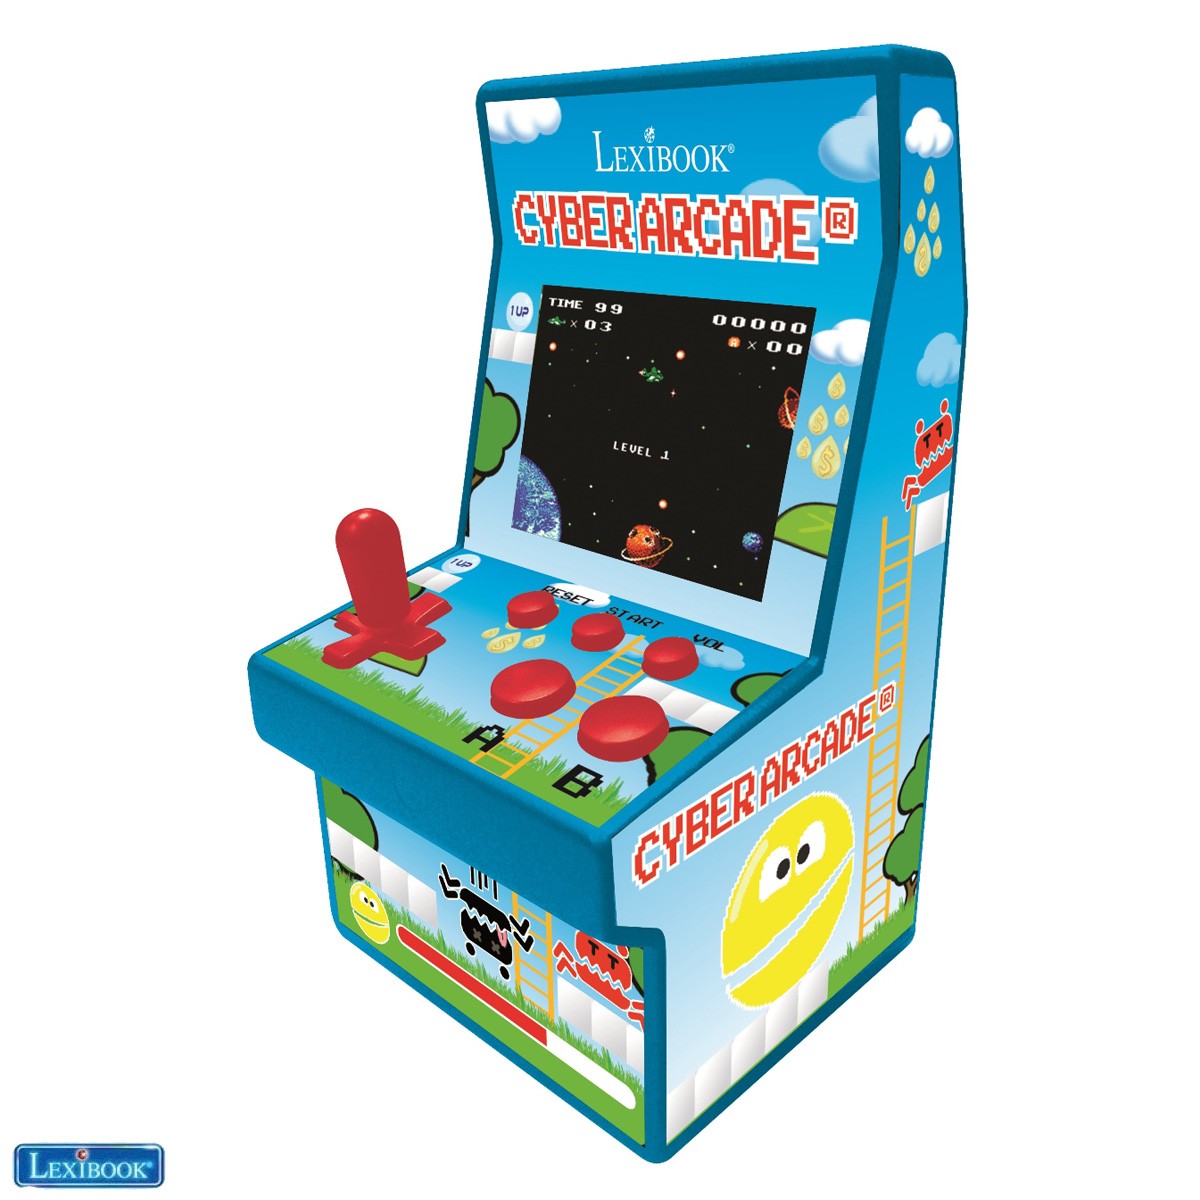 Consola Cyber Arcade® 200 juegos